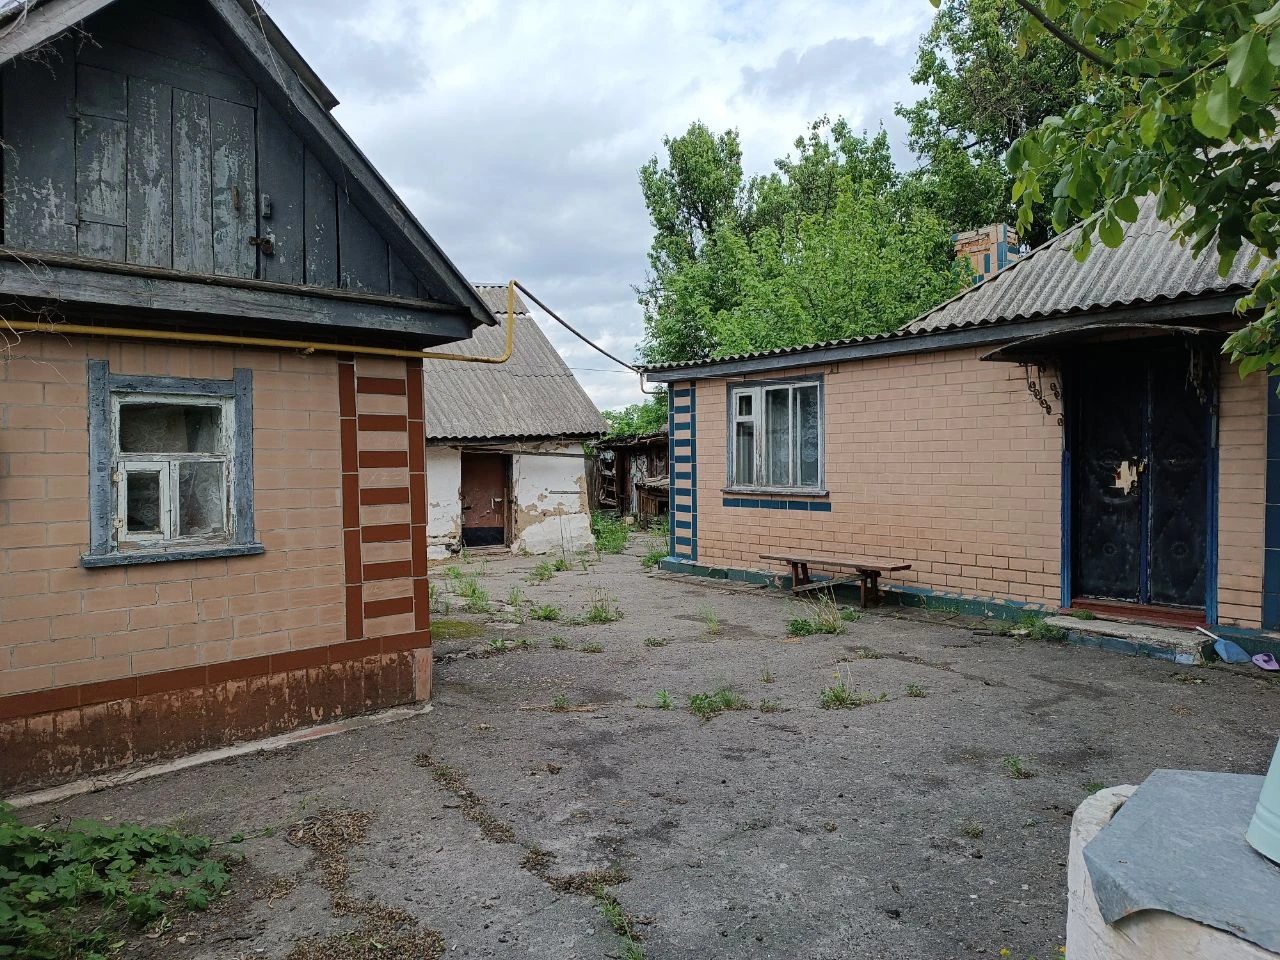 Продається будинок в селі Дмитрівка, Черкаської області